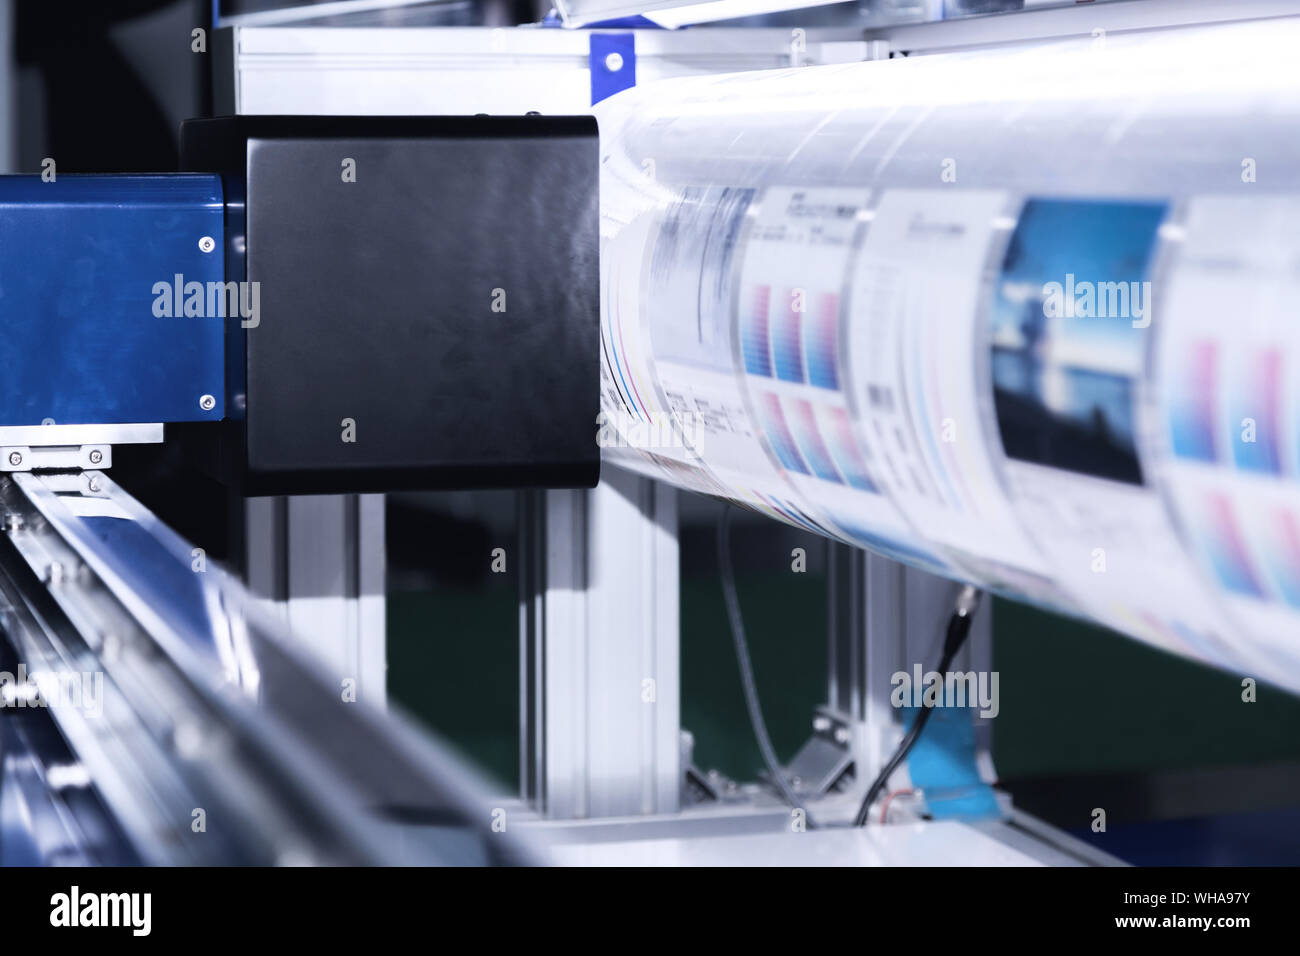 Nuova ed innovativa tecnologia digitale di stampa automatica la macchina è in fase di stampa su una continua nella fabbrica di stampa. Foto Stock